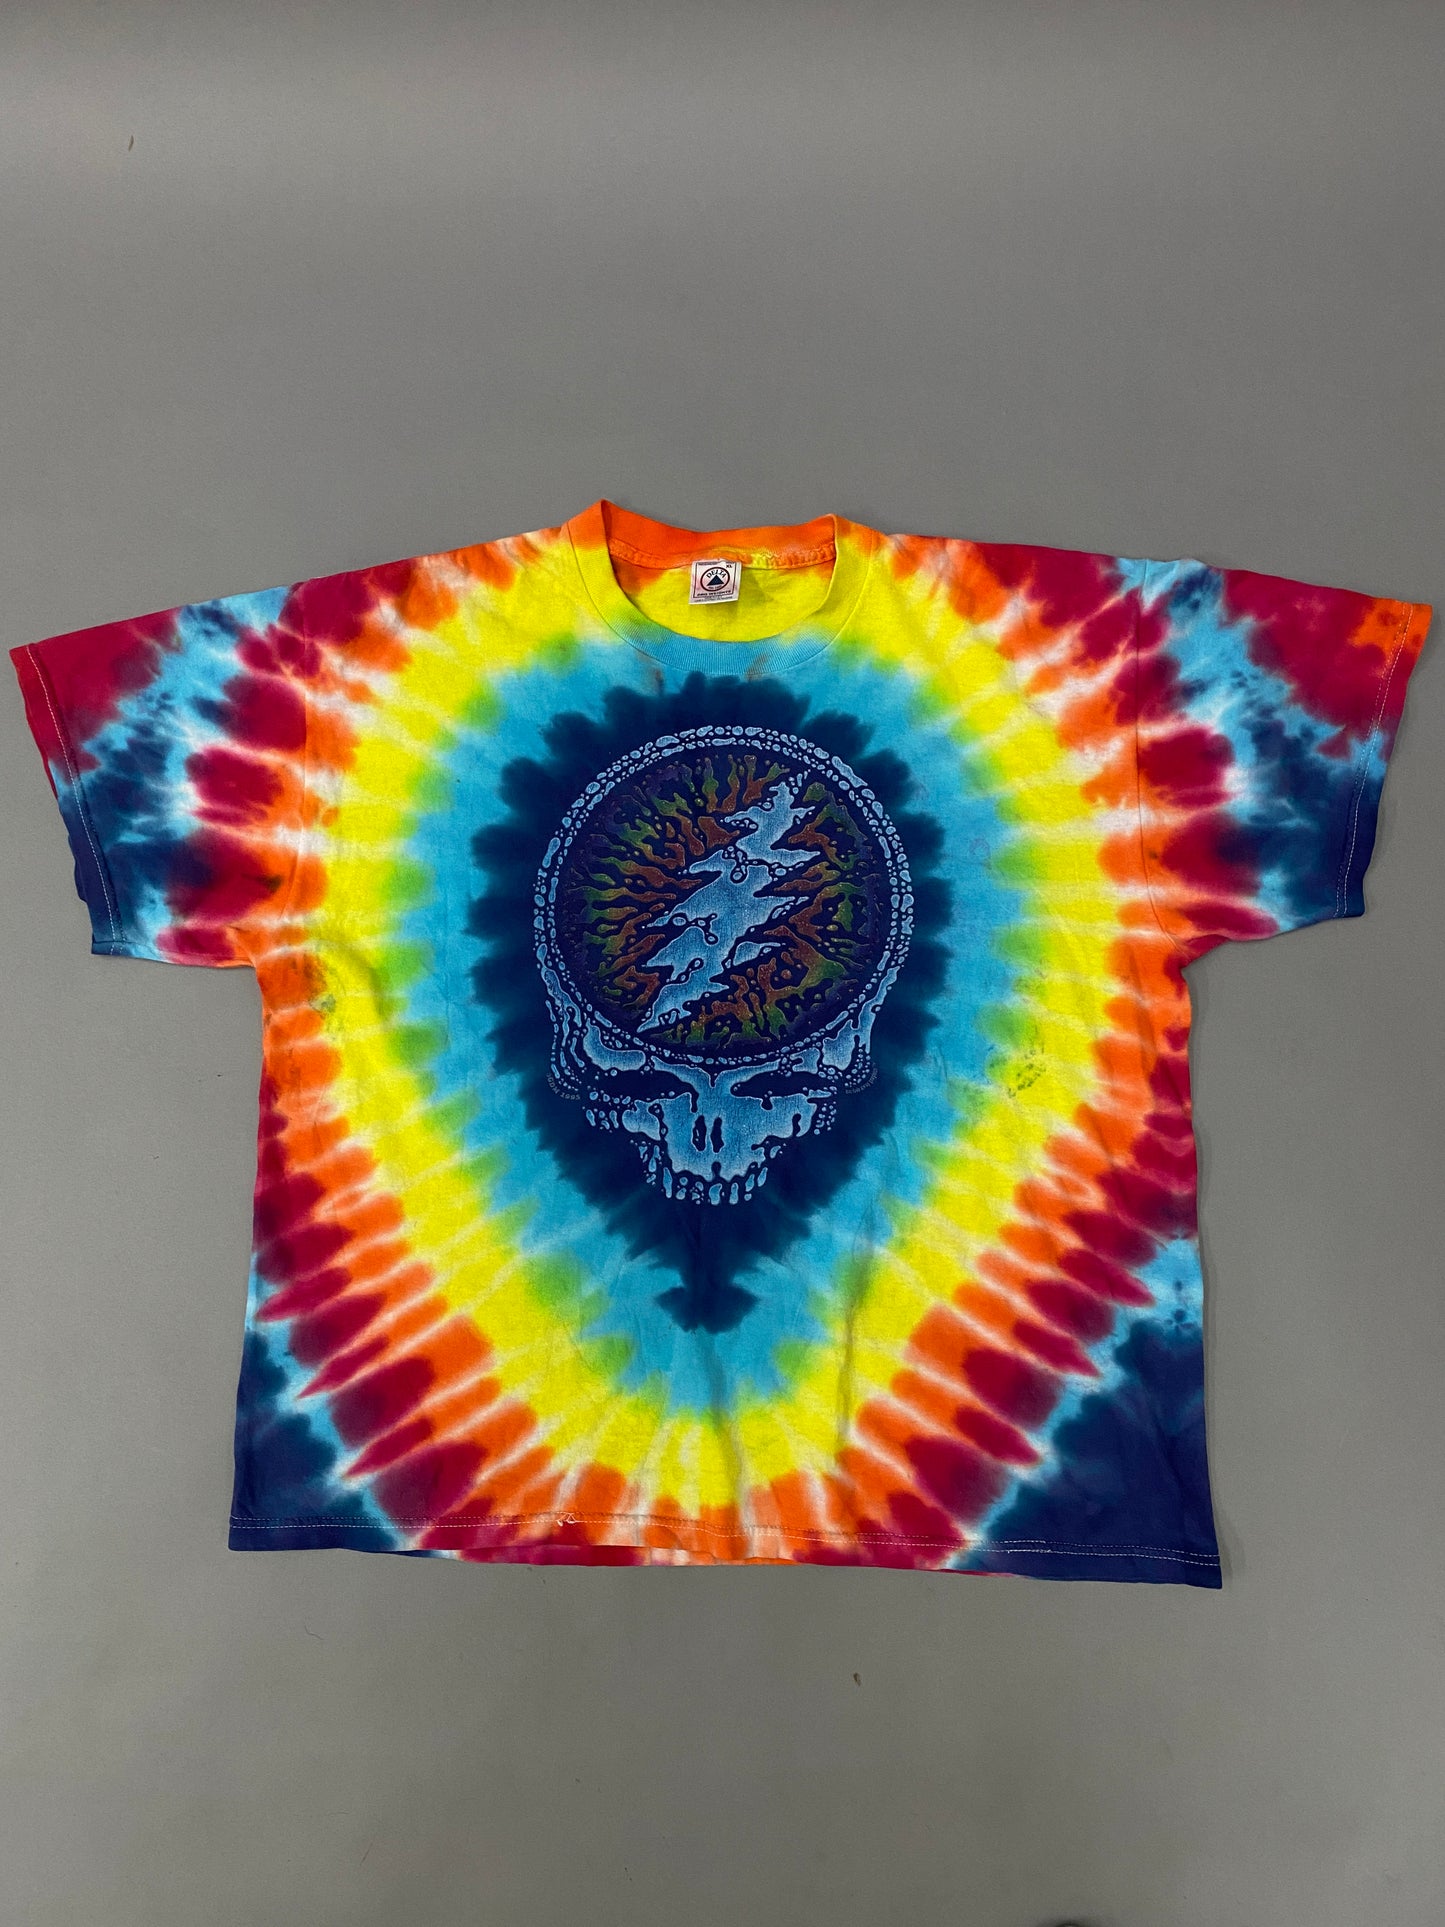 Grateful Dead 1995 Summer Tour T-Shirt